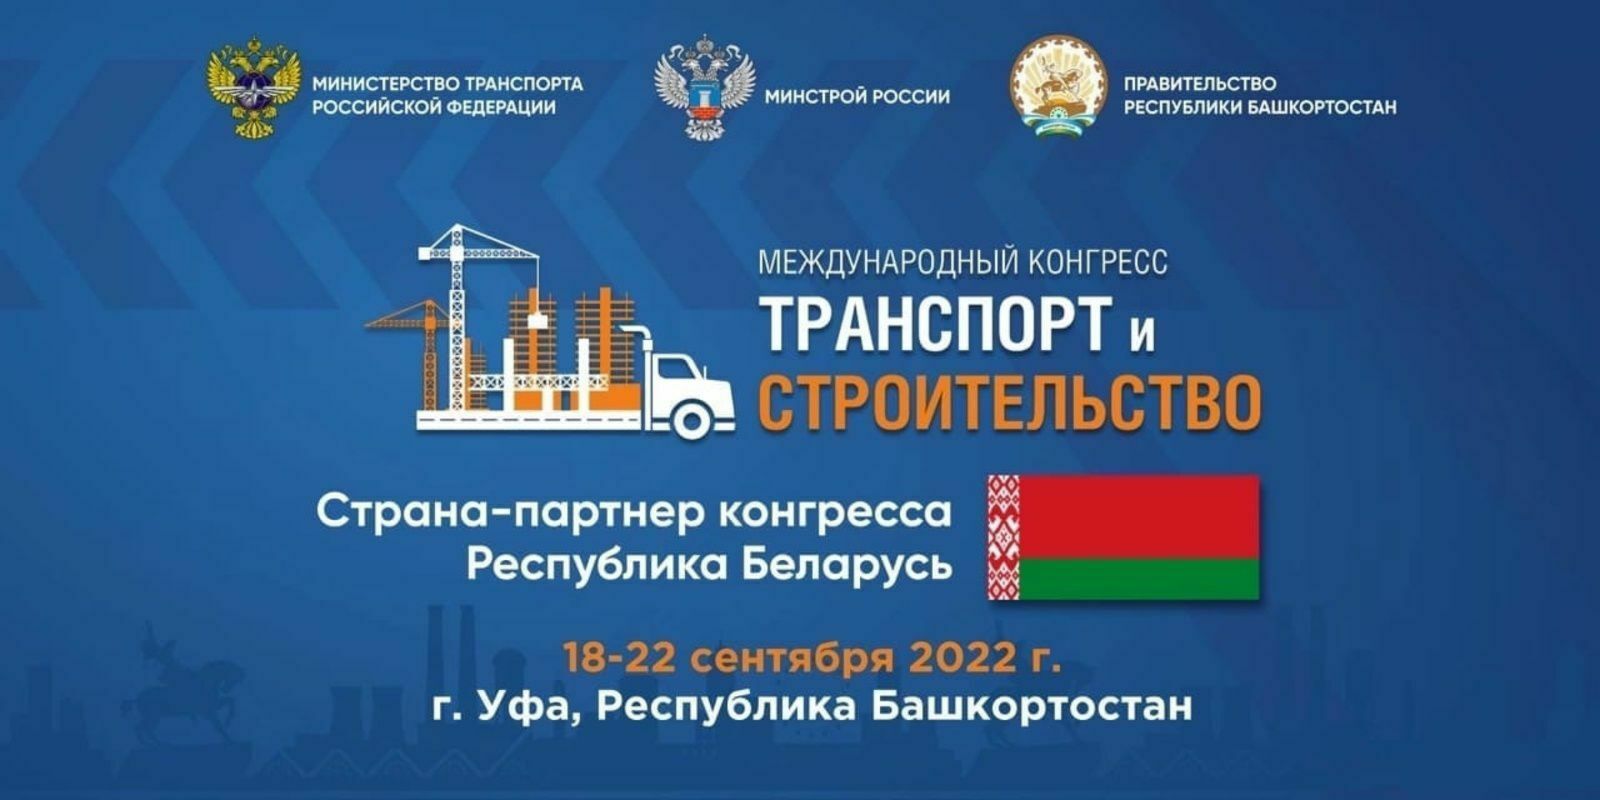 В Башкирии полным ходом идёт подготовка к Международному конгрессу «Транспорт и строительство»